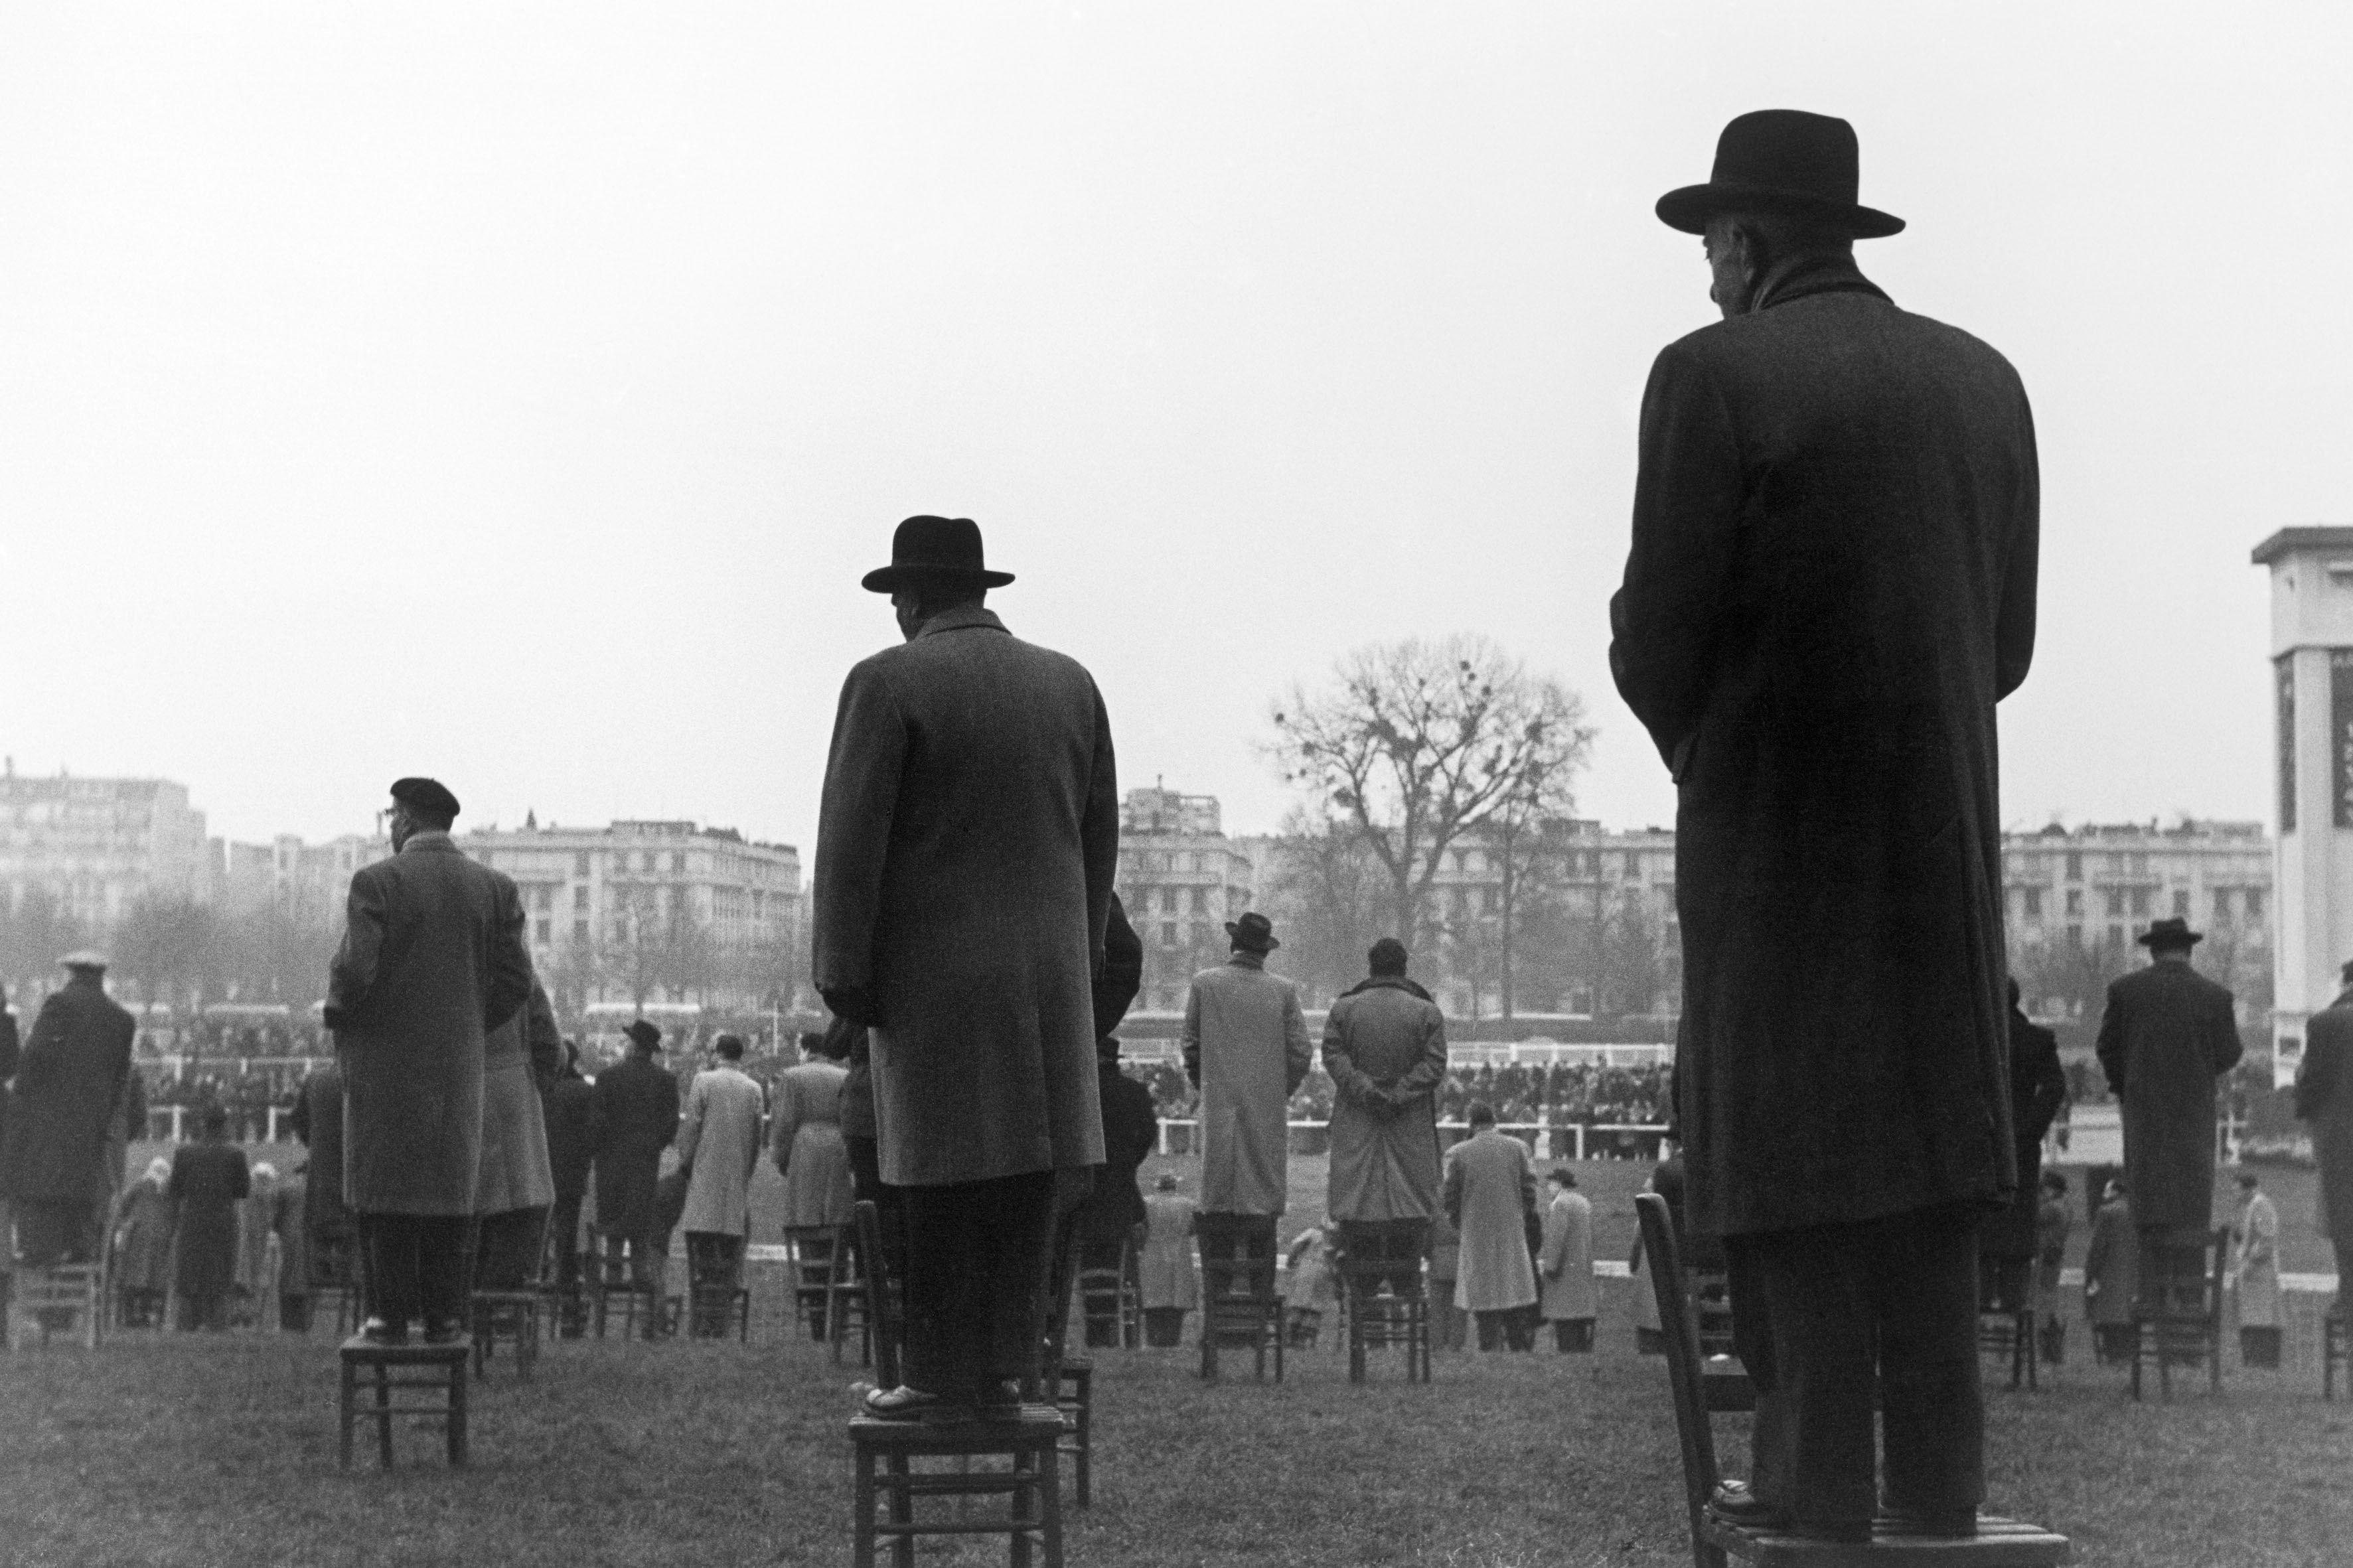 Гонки в Отёе, Франция, 1950. Фотограф Сабина Вайс